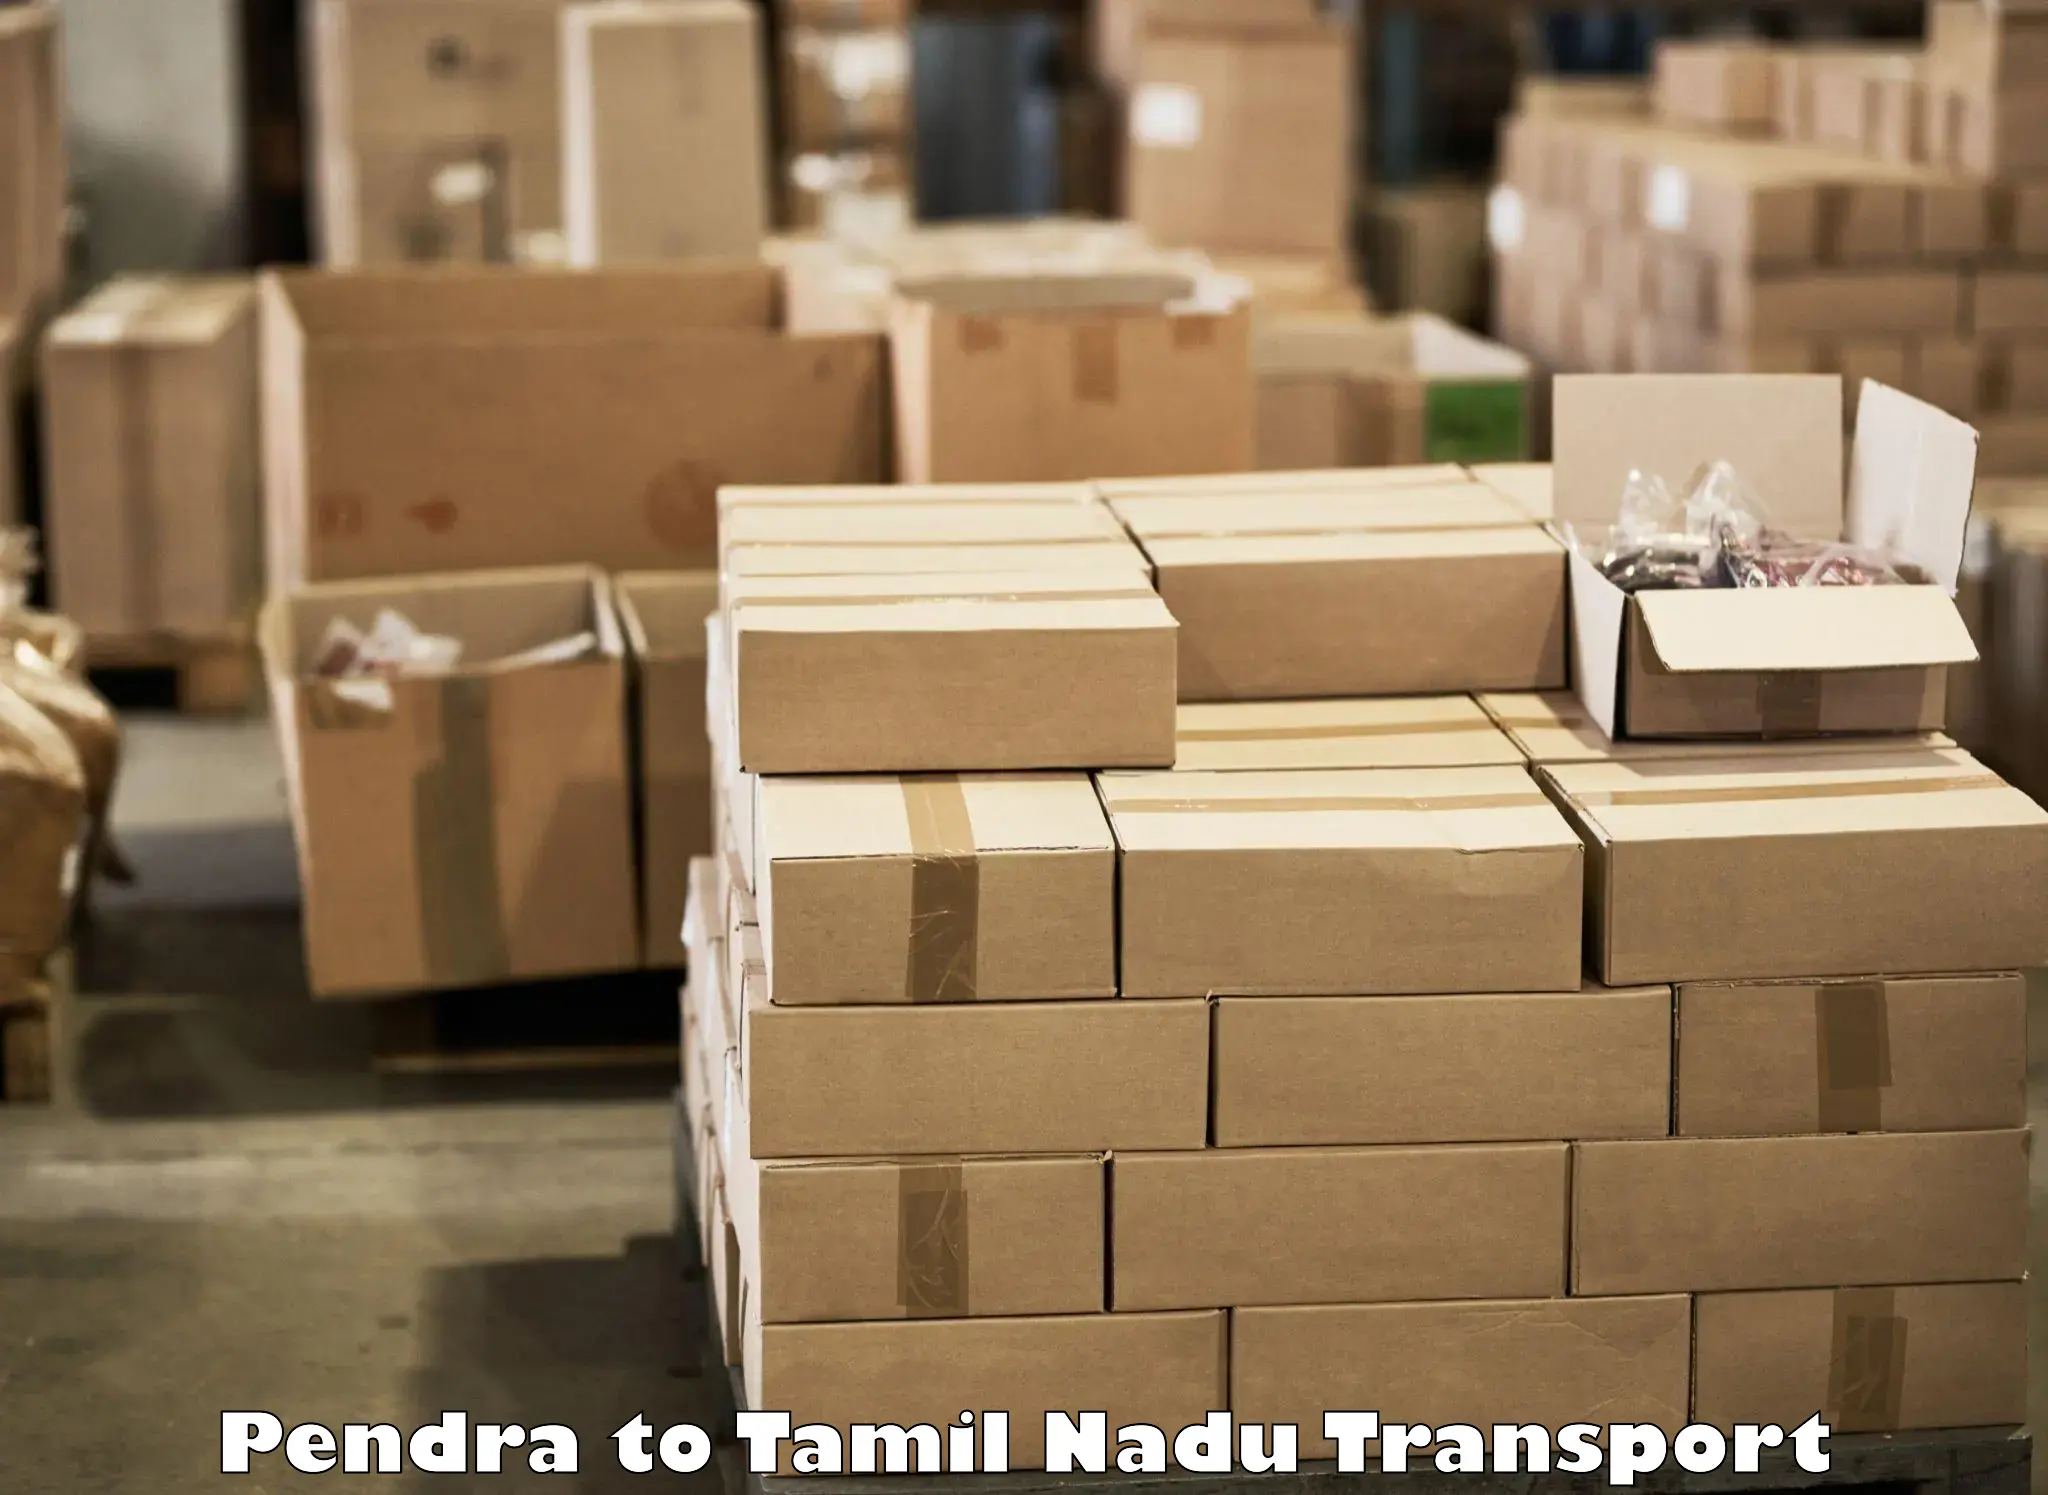 Shipping partner Pendra to Tiruturaipundi